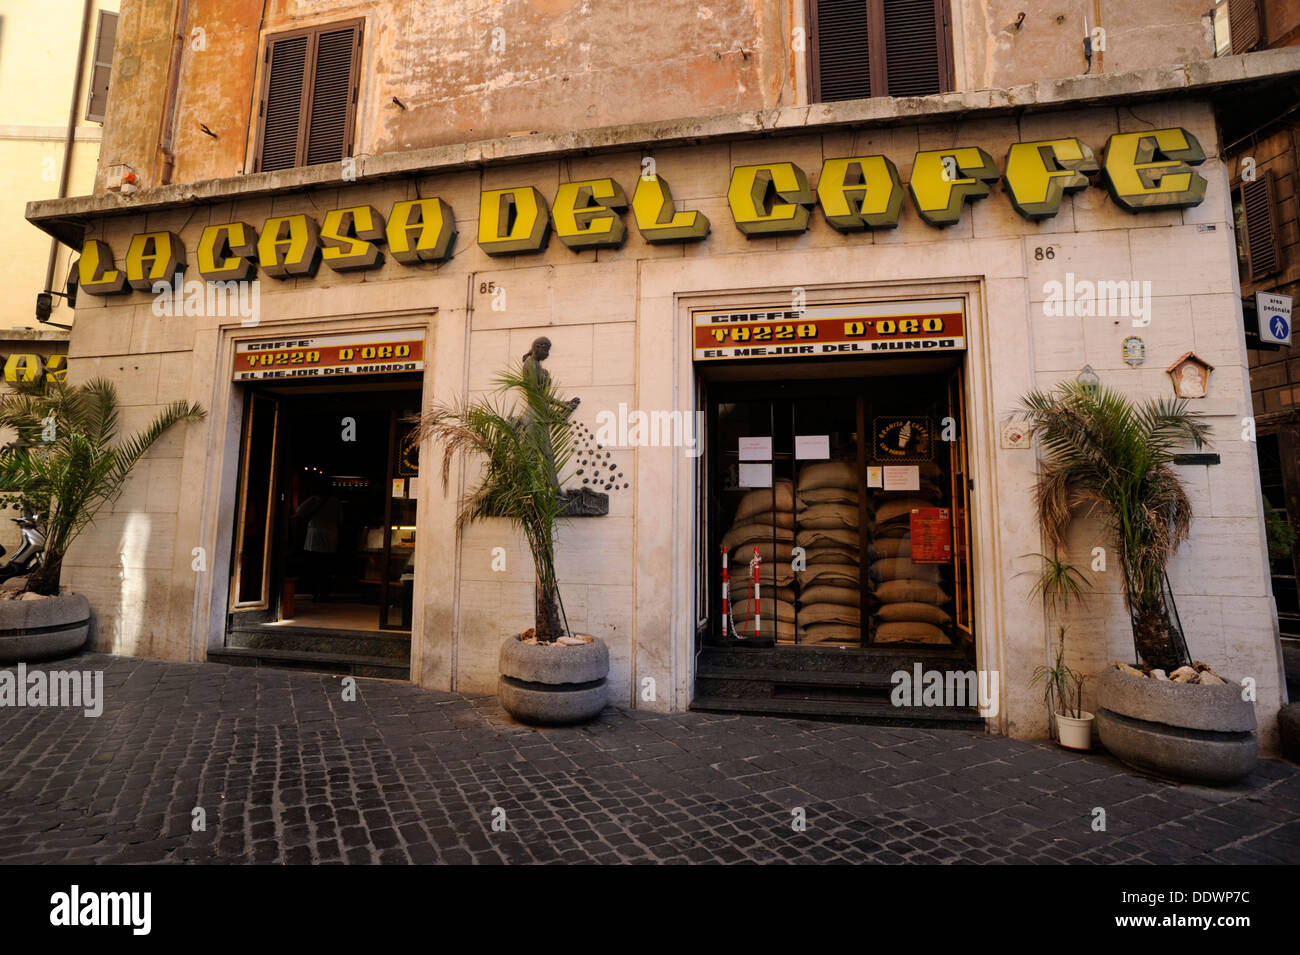 Italia, Roma, caffè tazza d'Oro Foto stock - Alamy